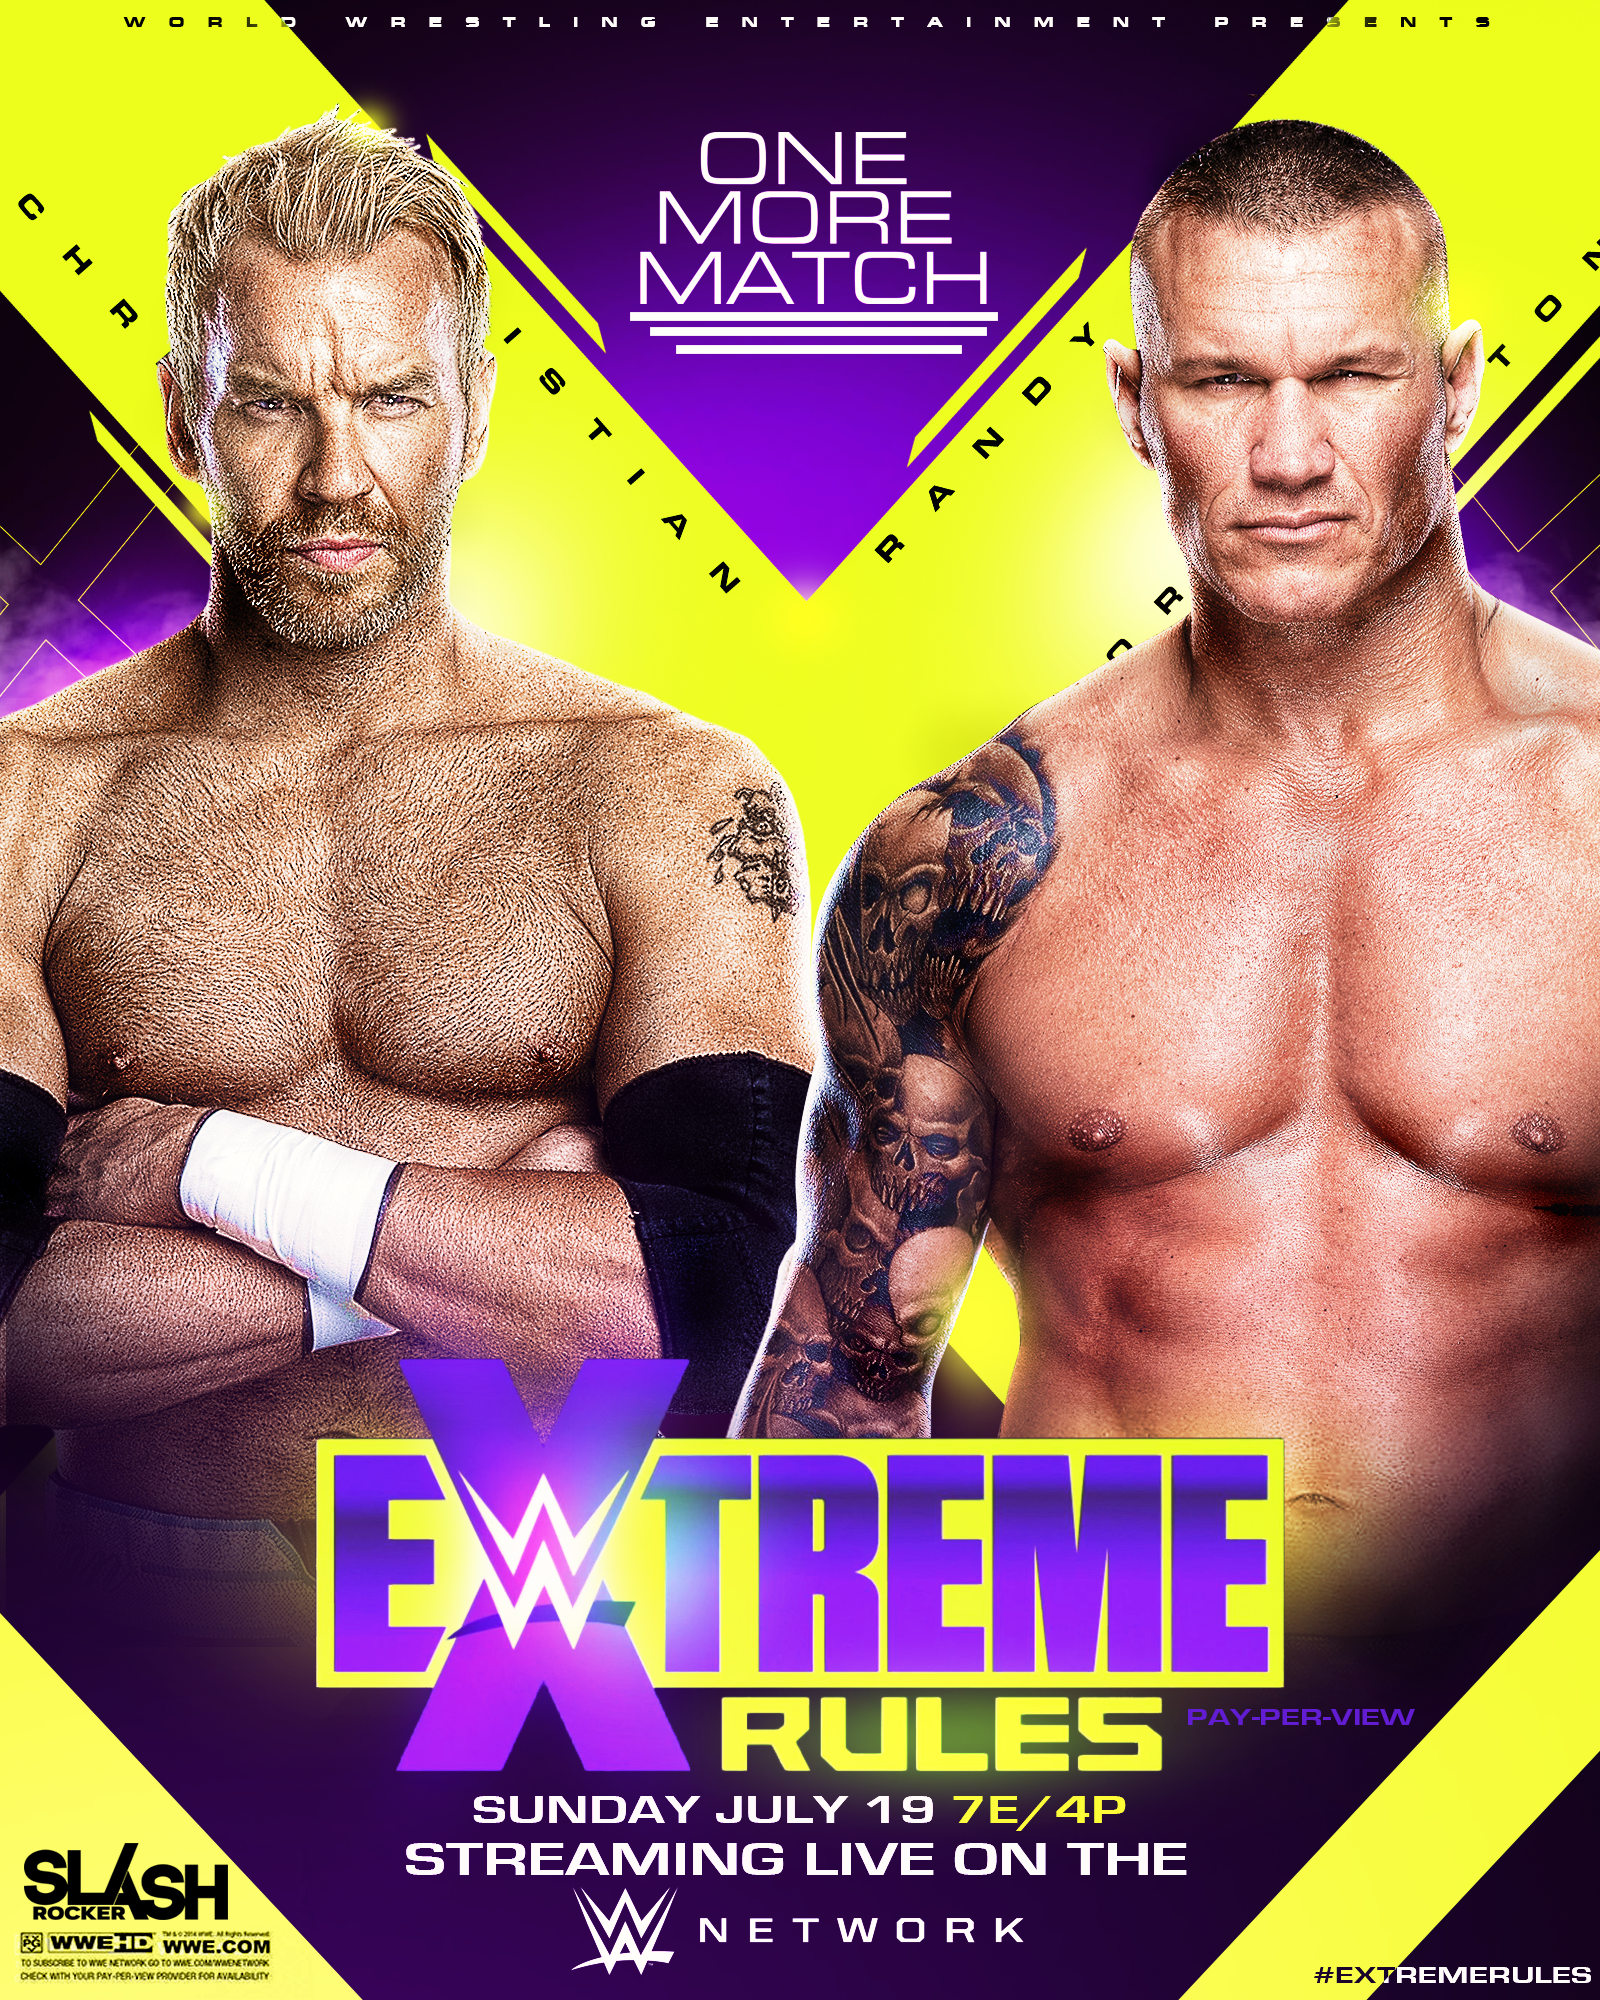 Extreme Rules Poster By Wweslashrocker54 On Deviantart